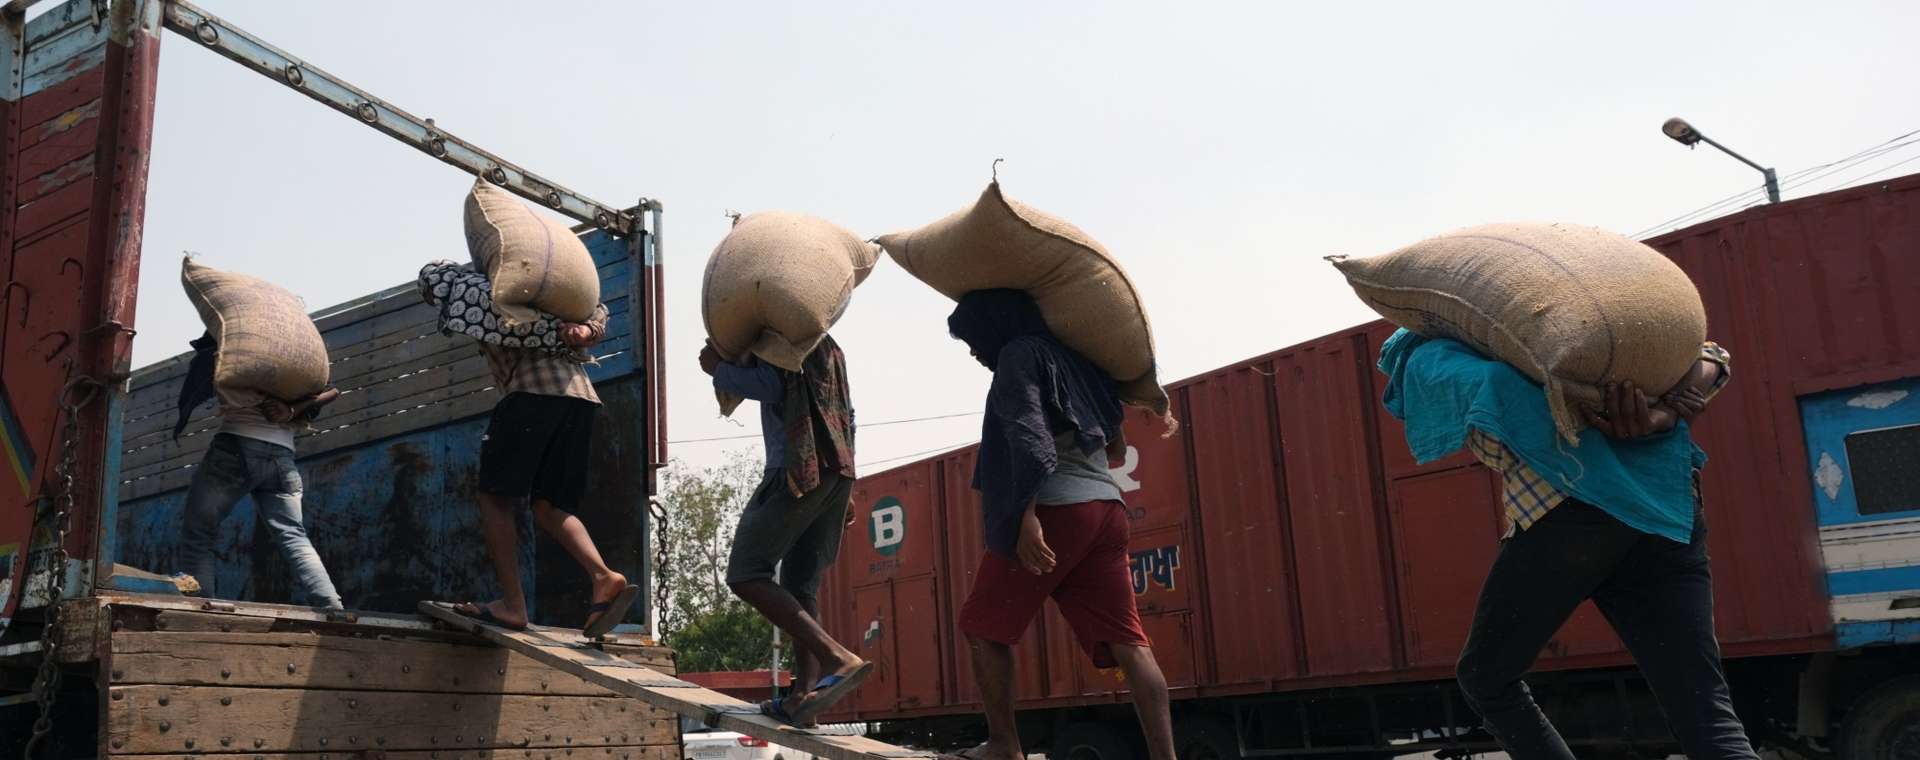 Buruh memuat karung gandum di atas truk di pasar gandum di distrik Khanna di Punjab, India, pada Sabtu, 30 April 2022.